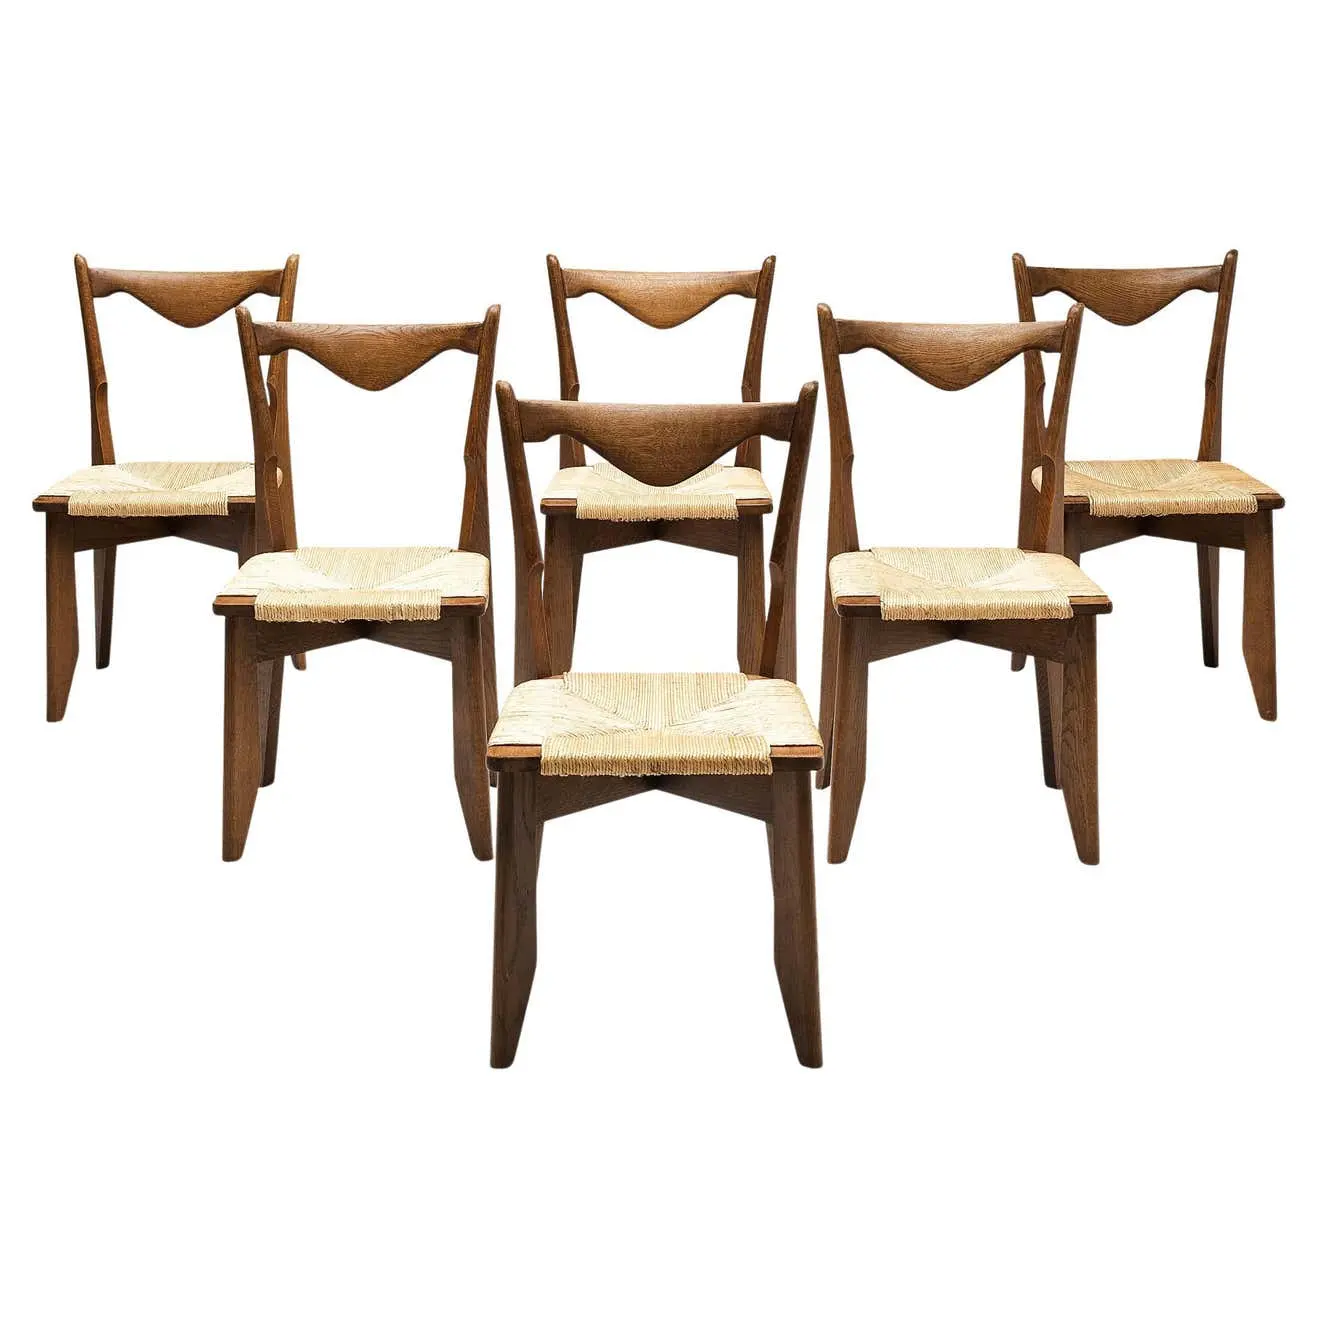 Six chaises de salle à manger en chêne et paille Sièges pour salon chaise de salle à manger en chêne chaise en bois massif dossier droit